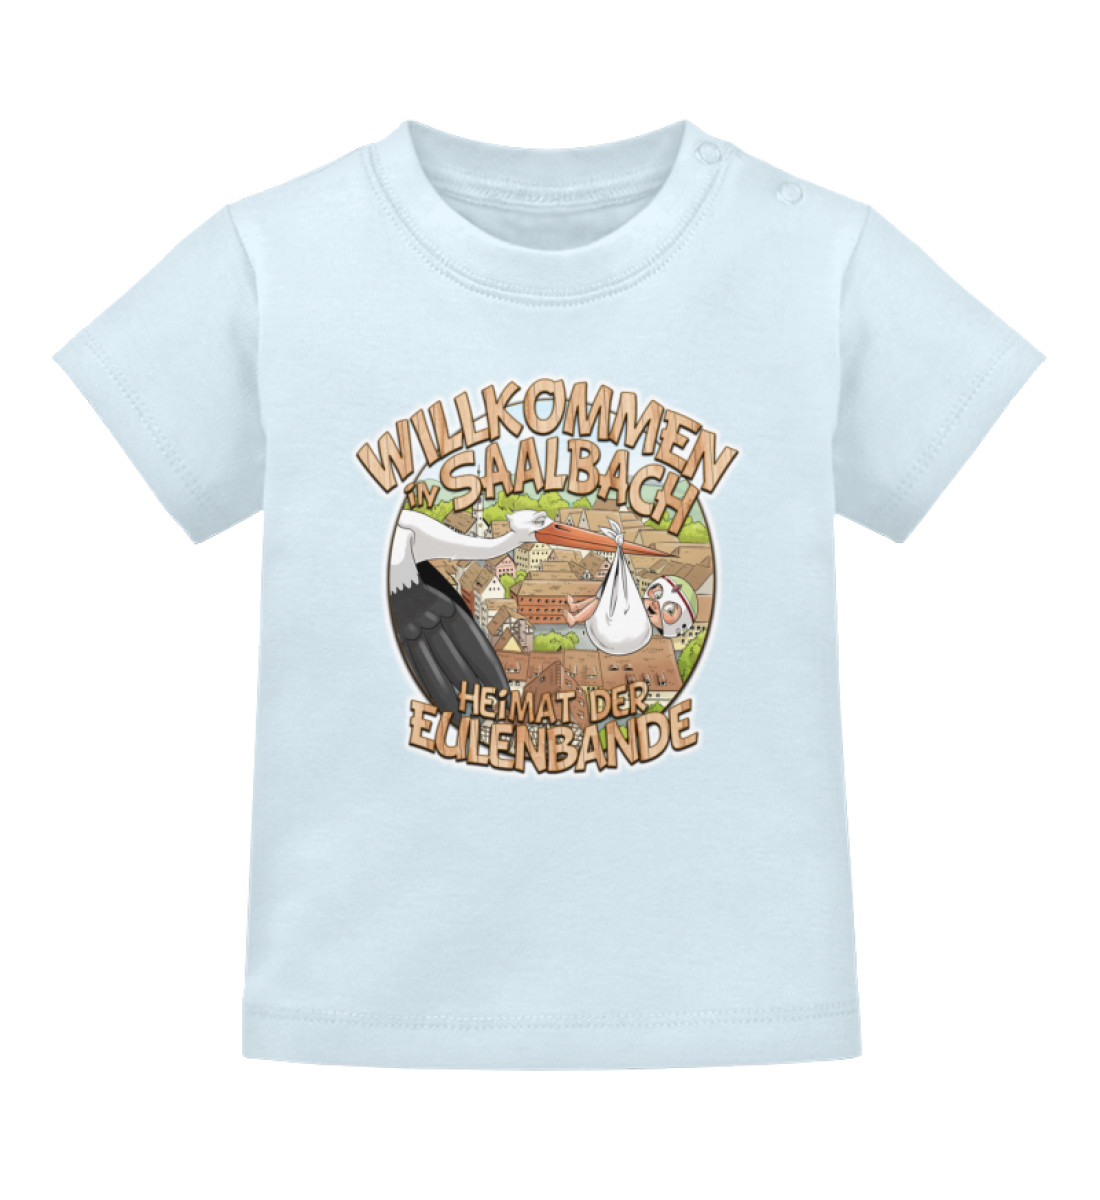 Willkommen in Saalbach Kids/Baby - Baby T-Shirt-5930